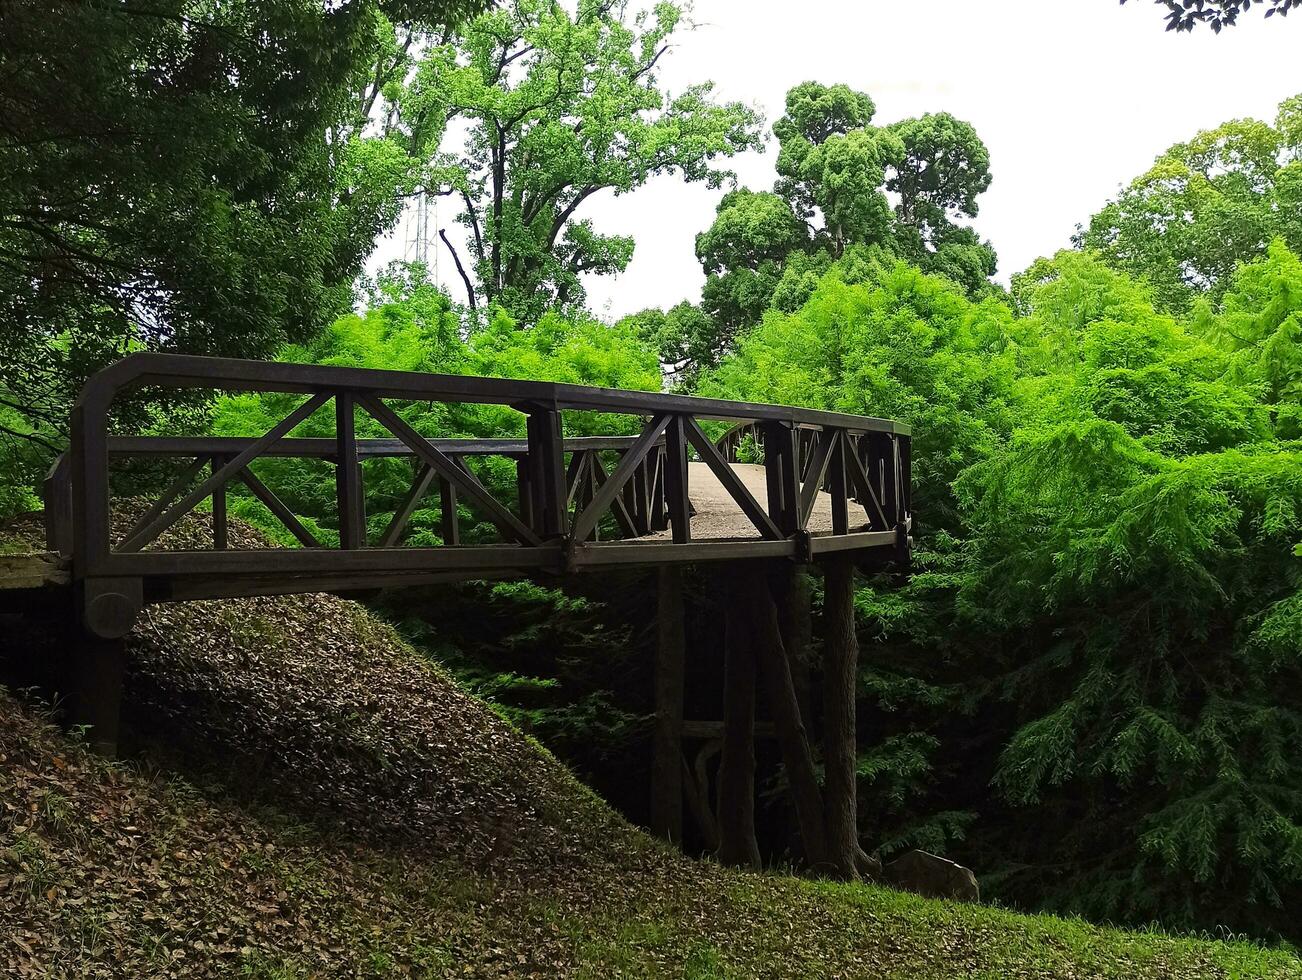 en bois chemin de fer pont dans le parc. juteux légumes verts, brillant fabuleux couleurs photo